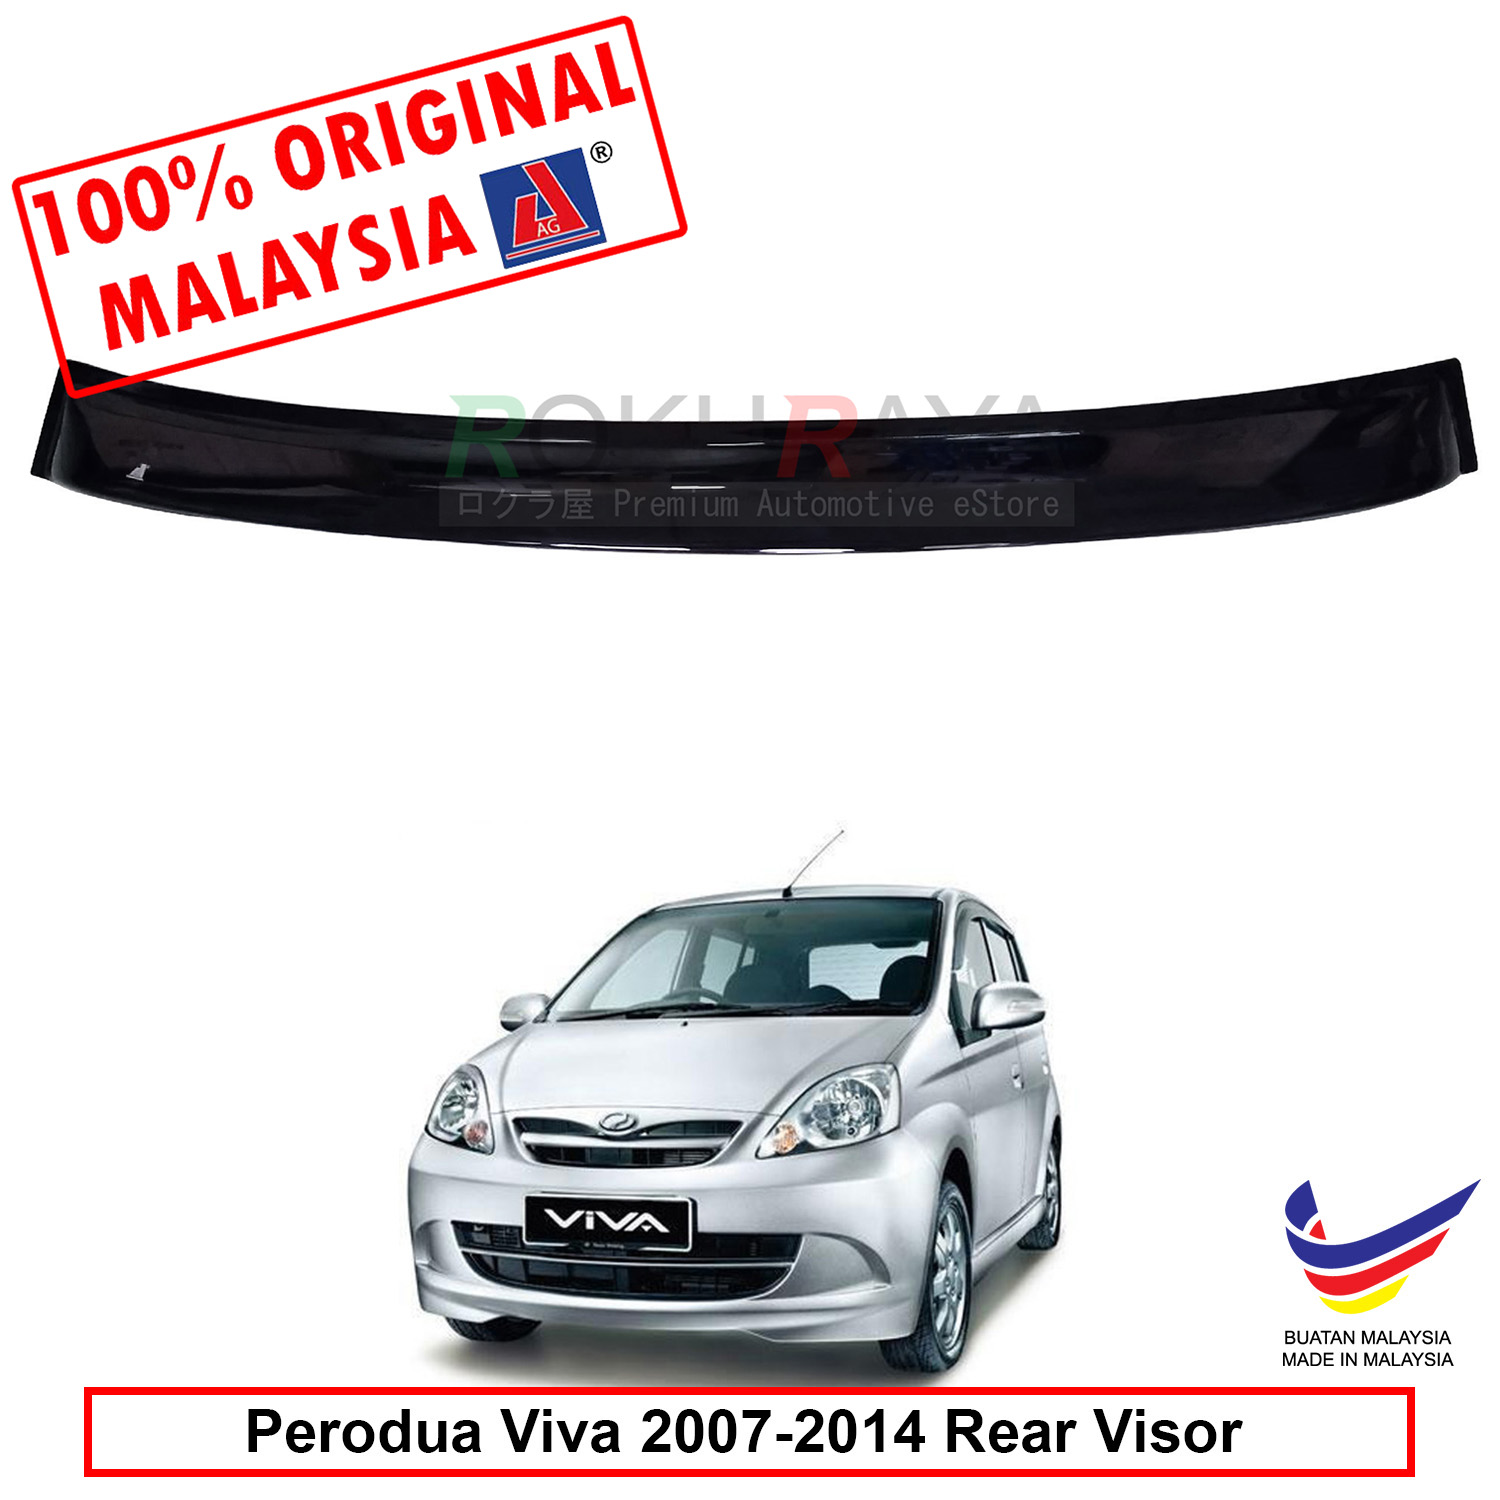 Perodua Viva 2007-2014 AG Rear Wing (end 1/18/2021 12:00 AM)